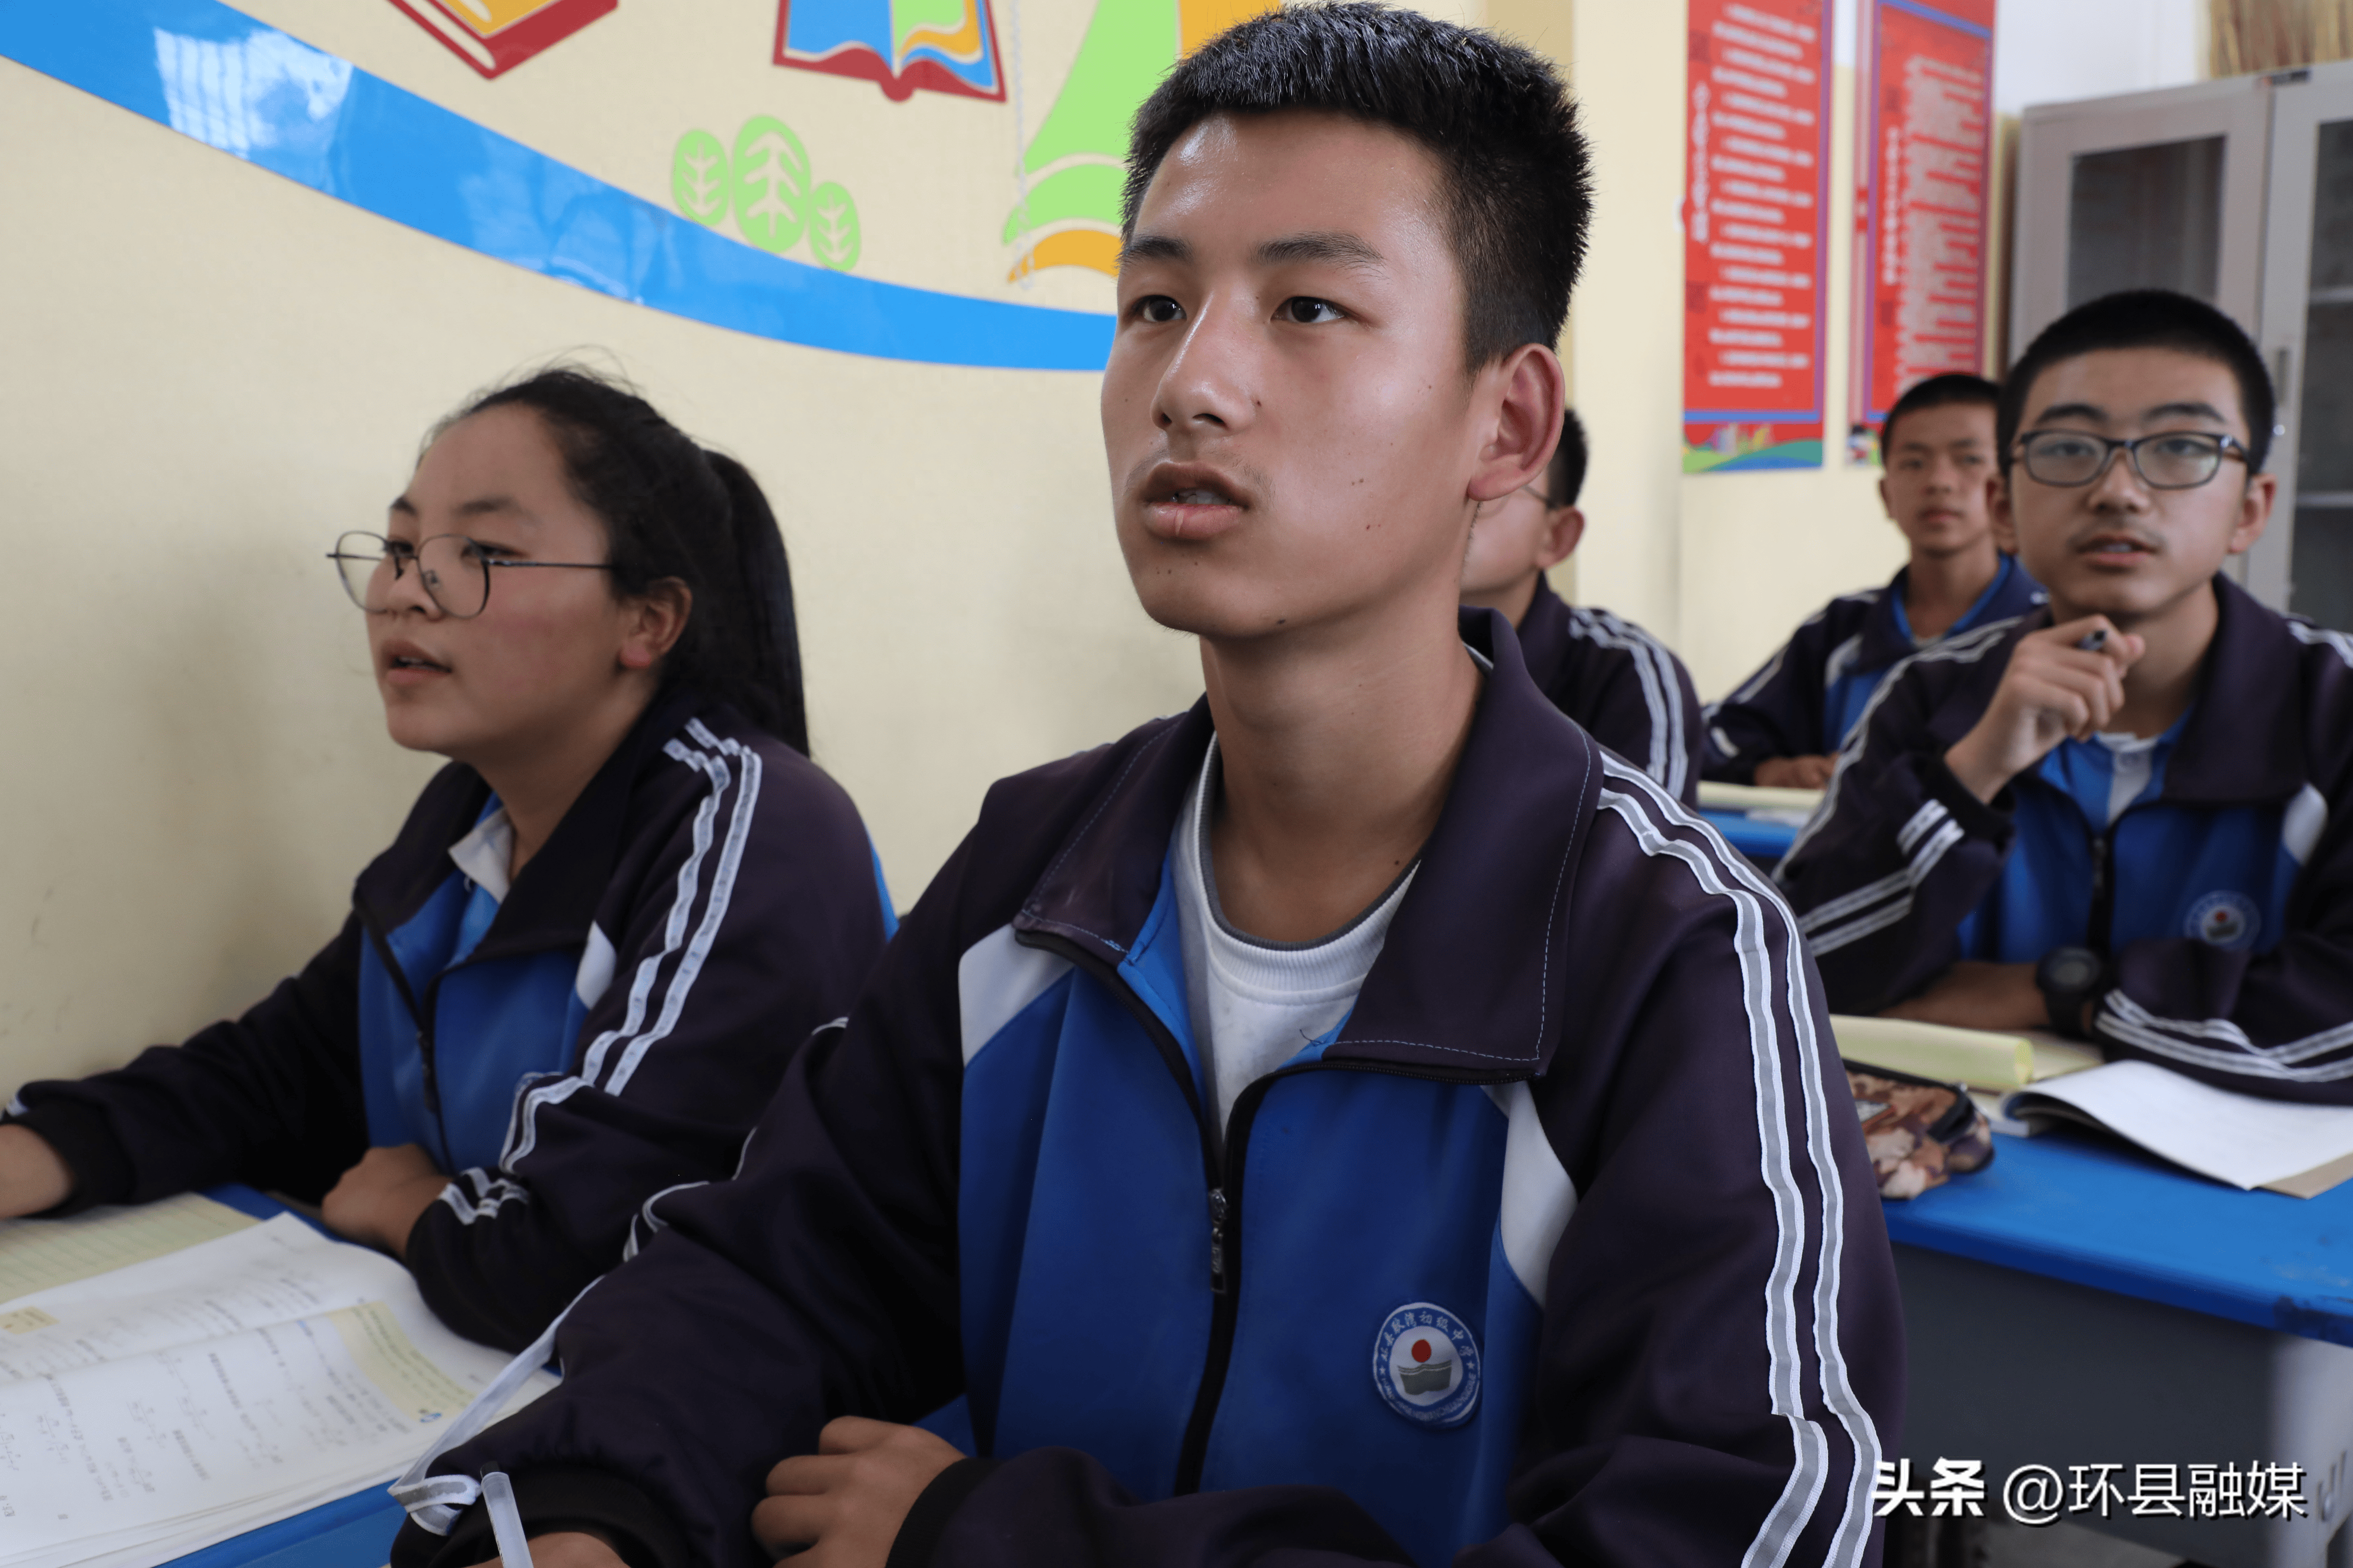 环县耿湾中学:以创新求学 提升教育质量